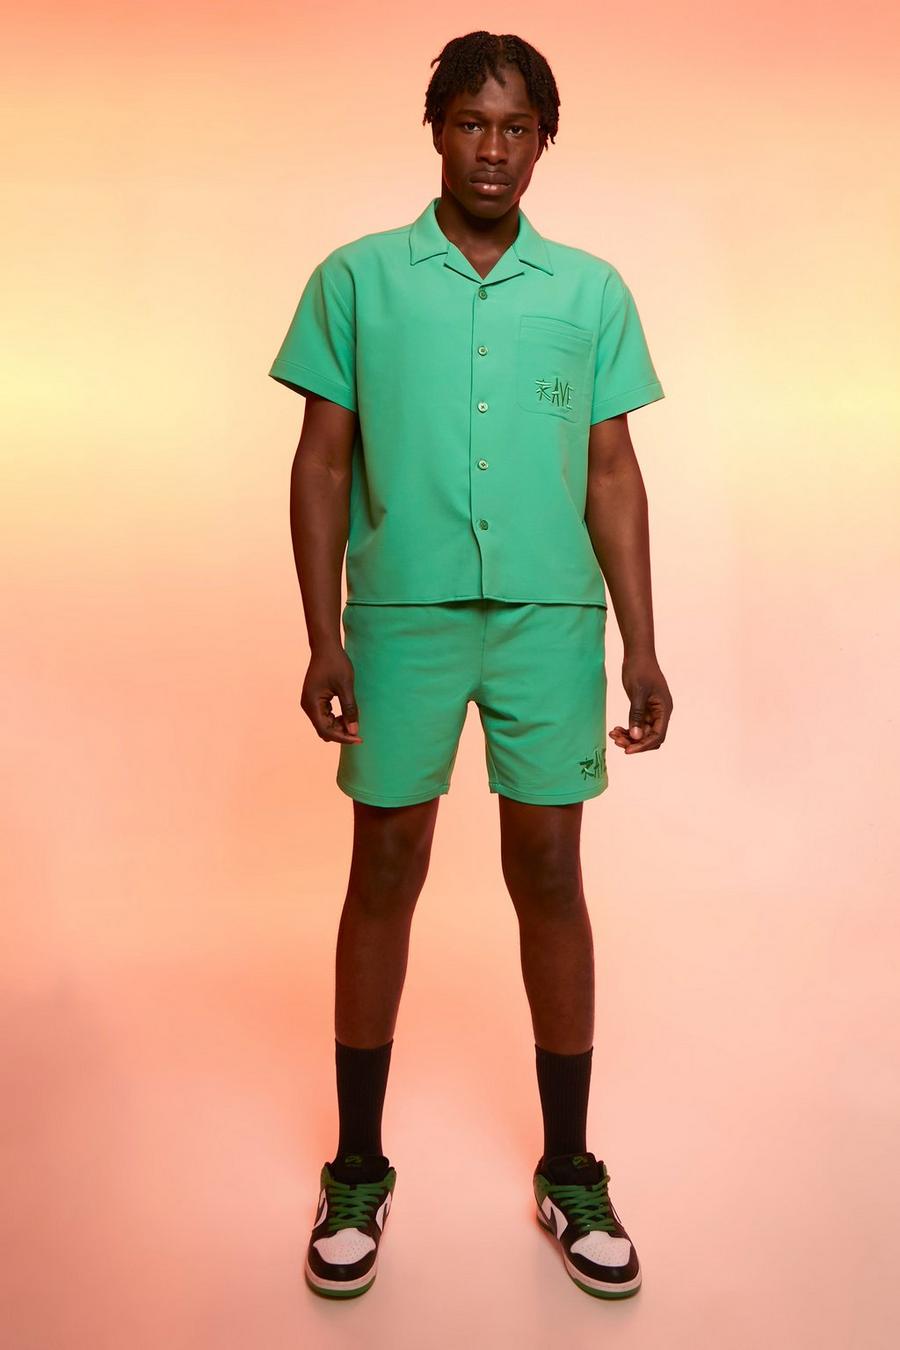 Camicia squadrata in nylon 4 way Stretch & pantaloncini, Green gerde